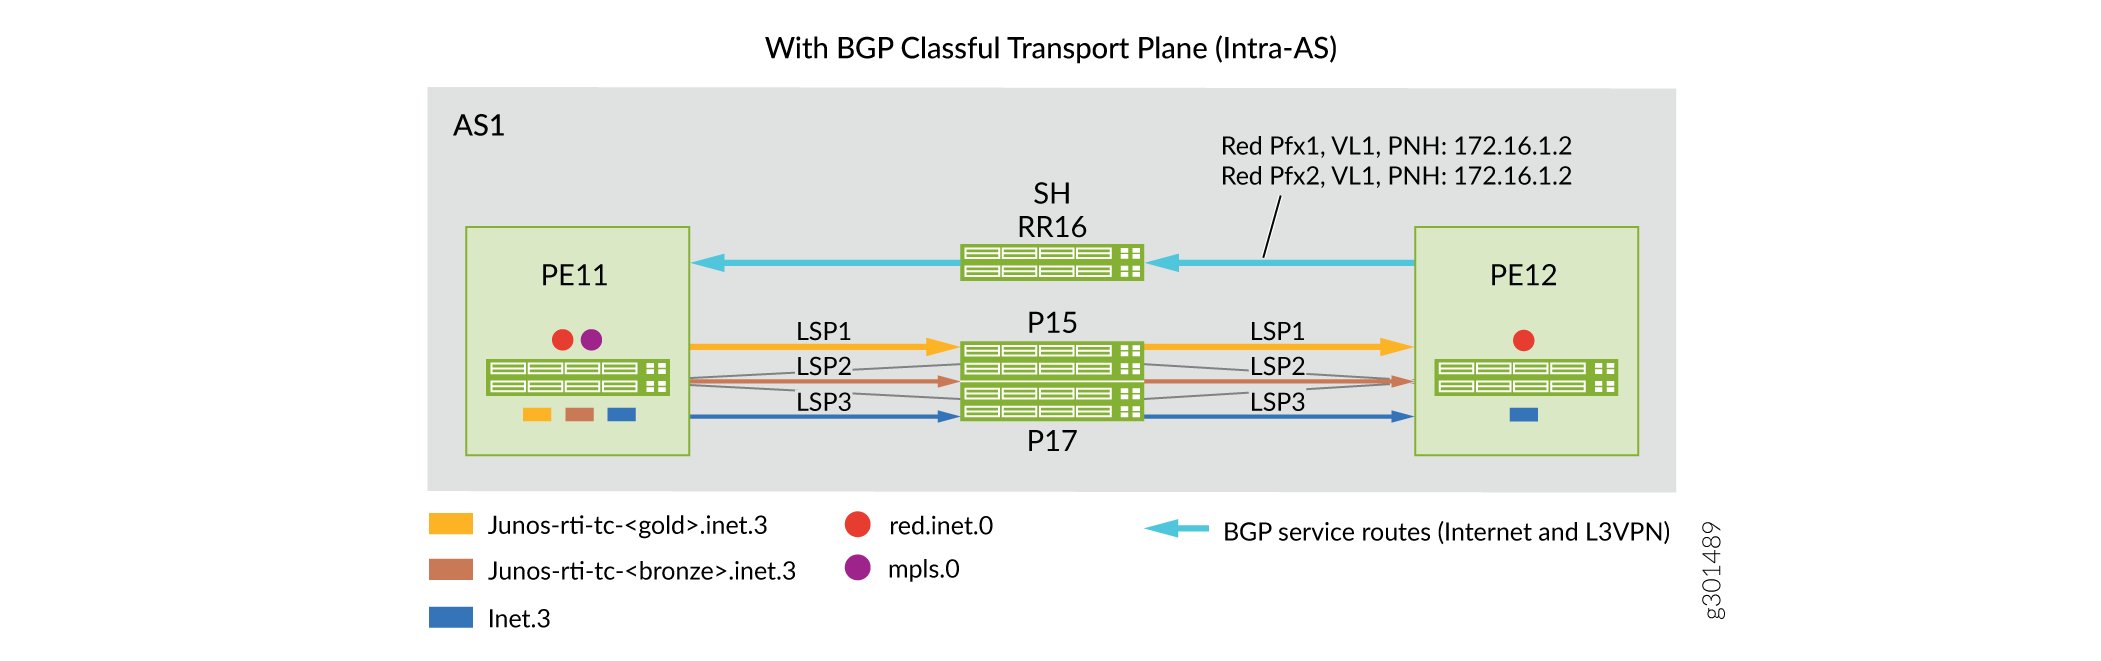 Dominio intraAS: Escenarios de antes y después para la implementación de planos de transporte con clase BGP